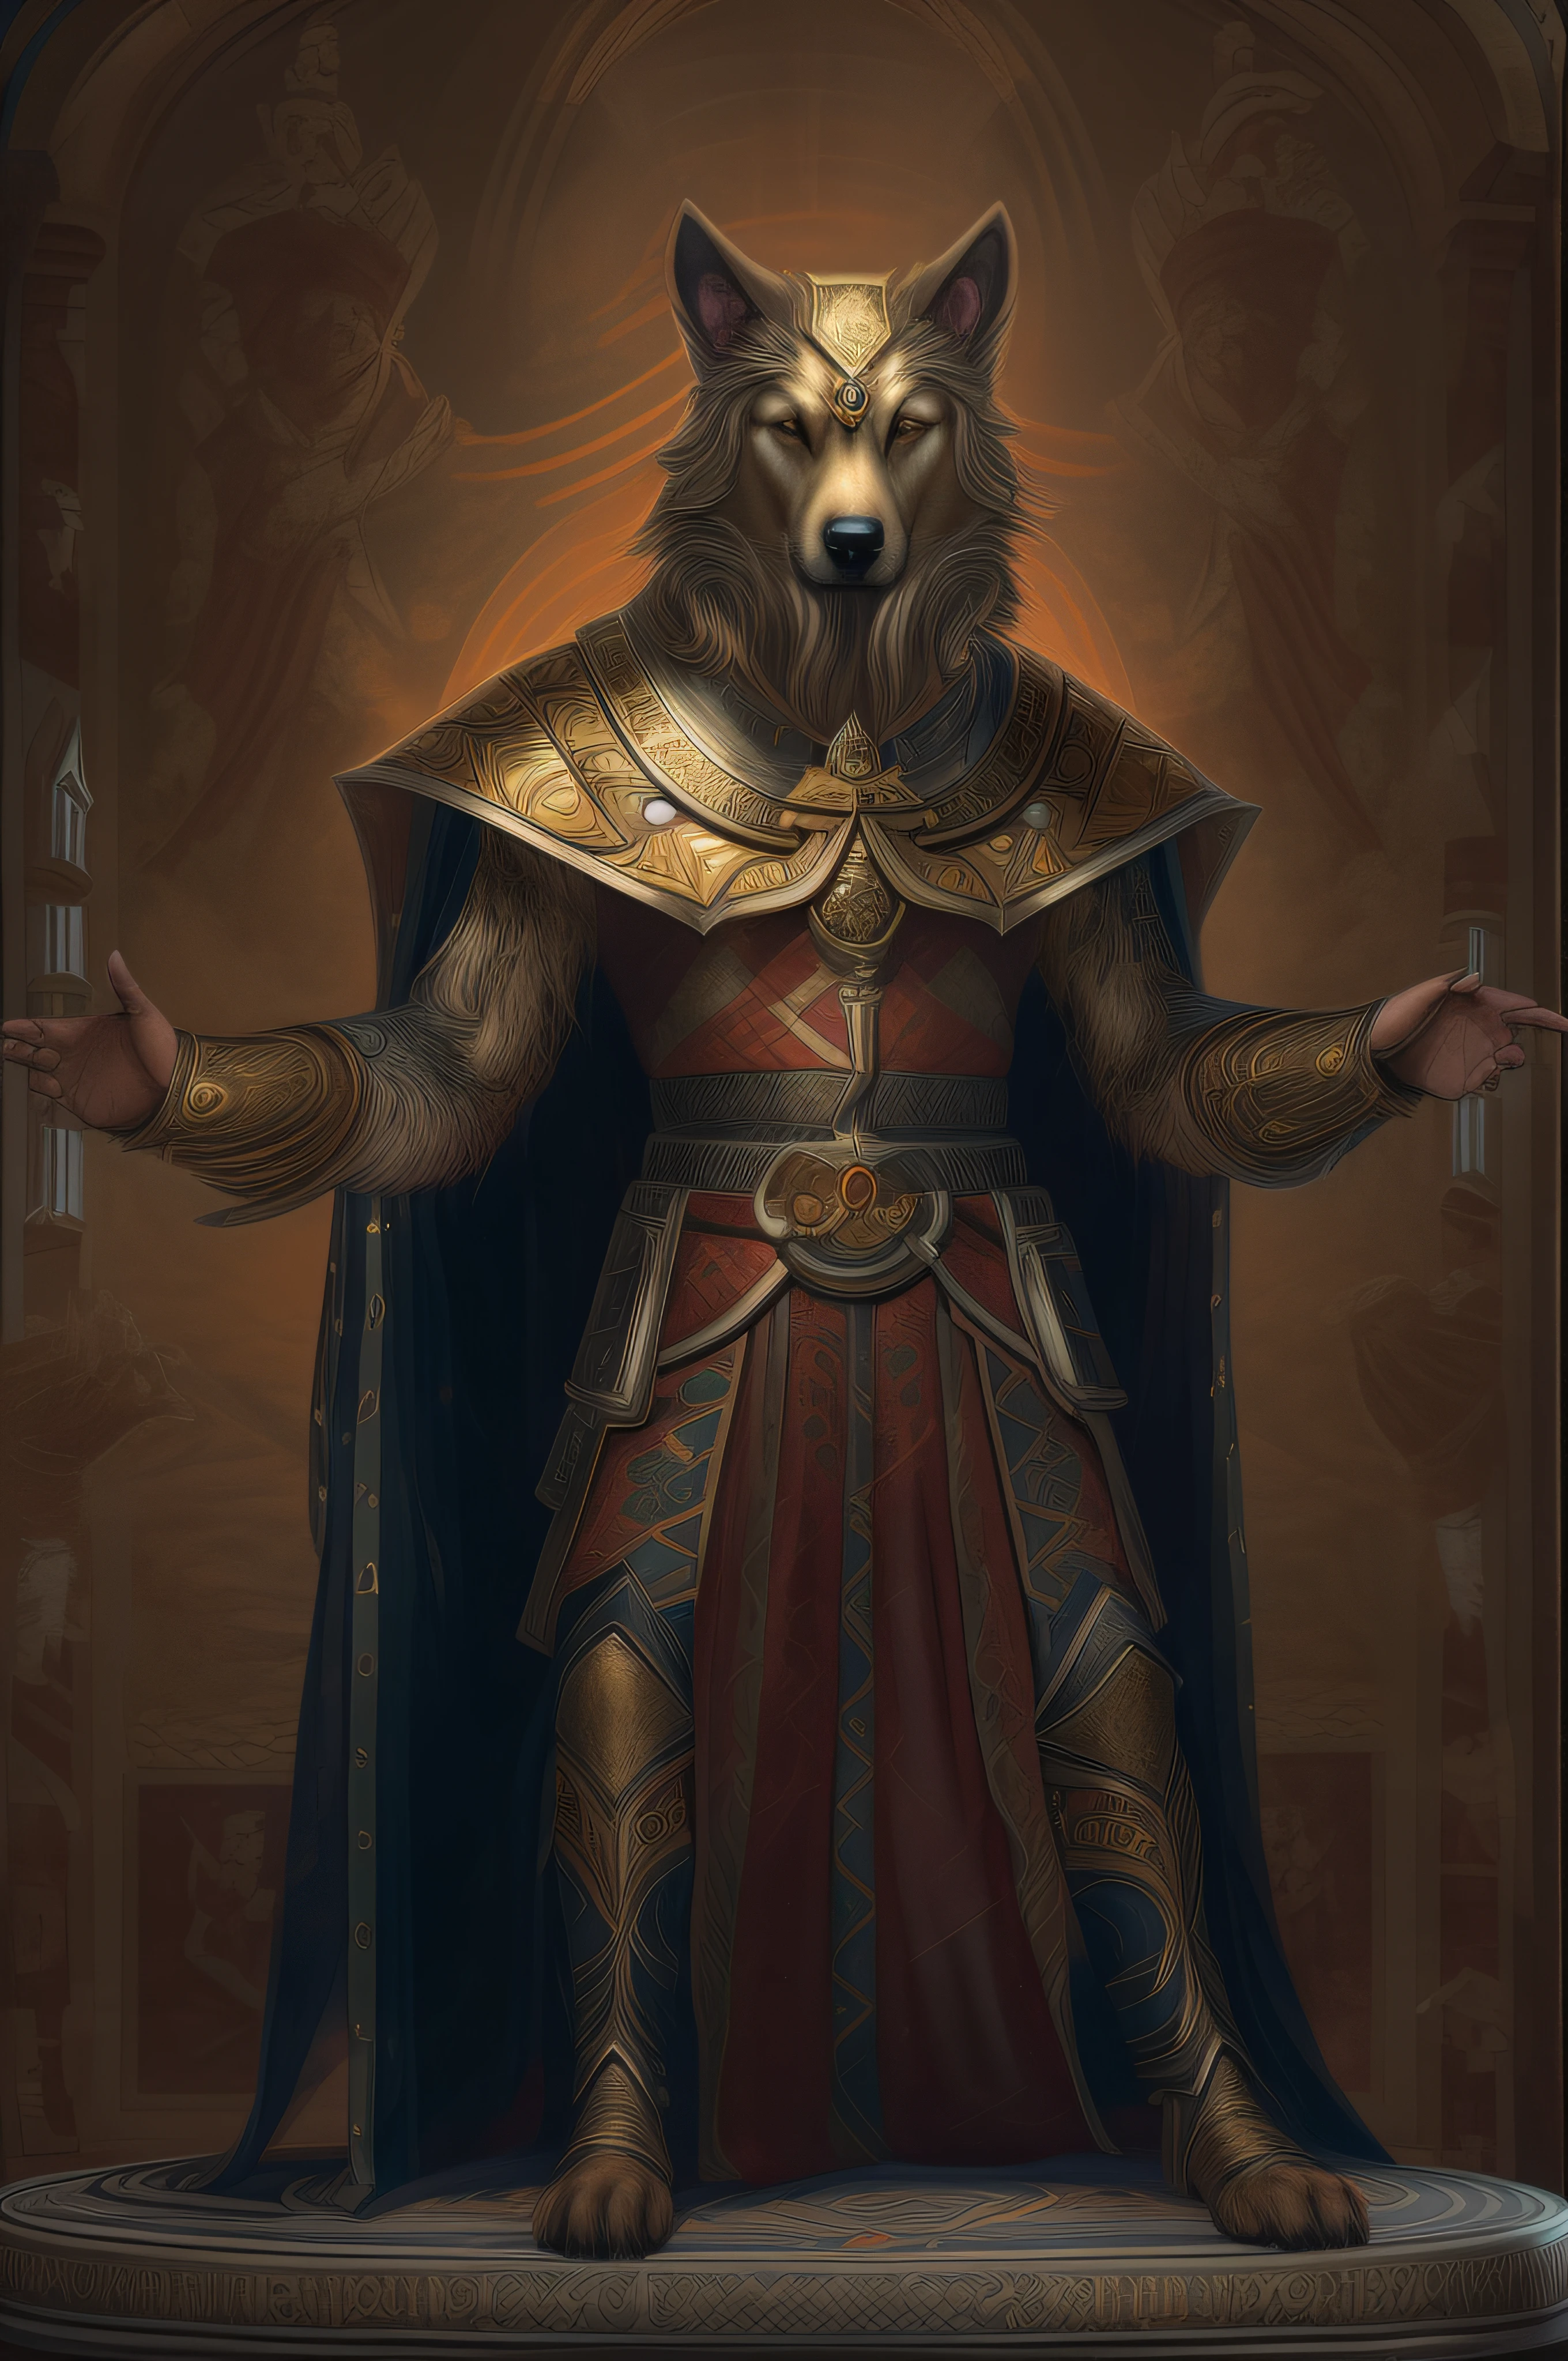 Una foto de un híbrido perro-hombre como poderoso emperador, 8K.